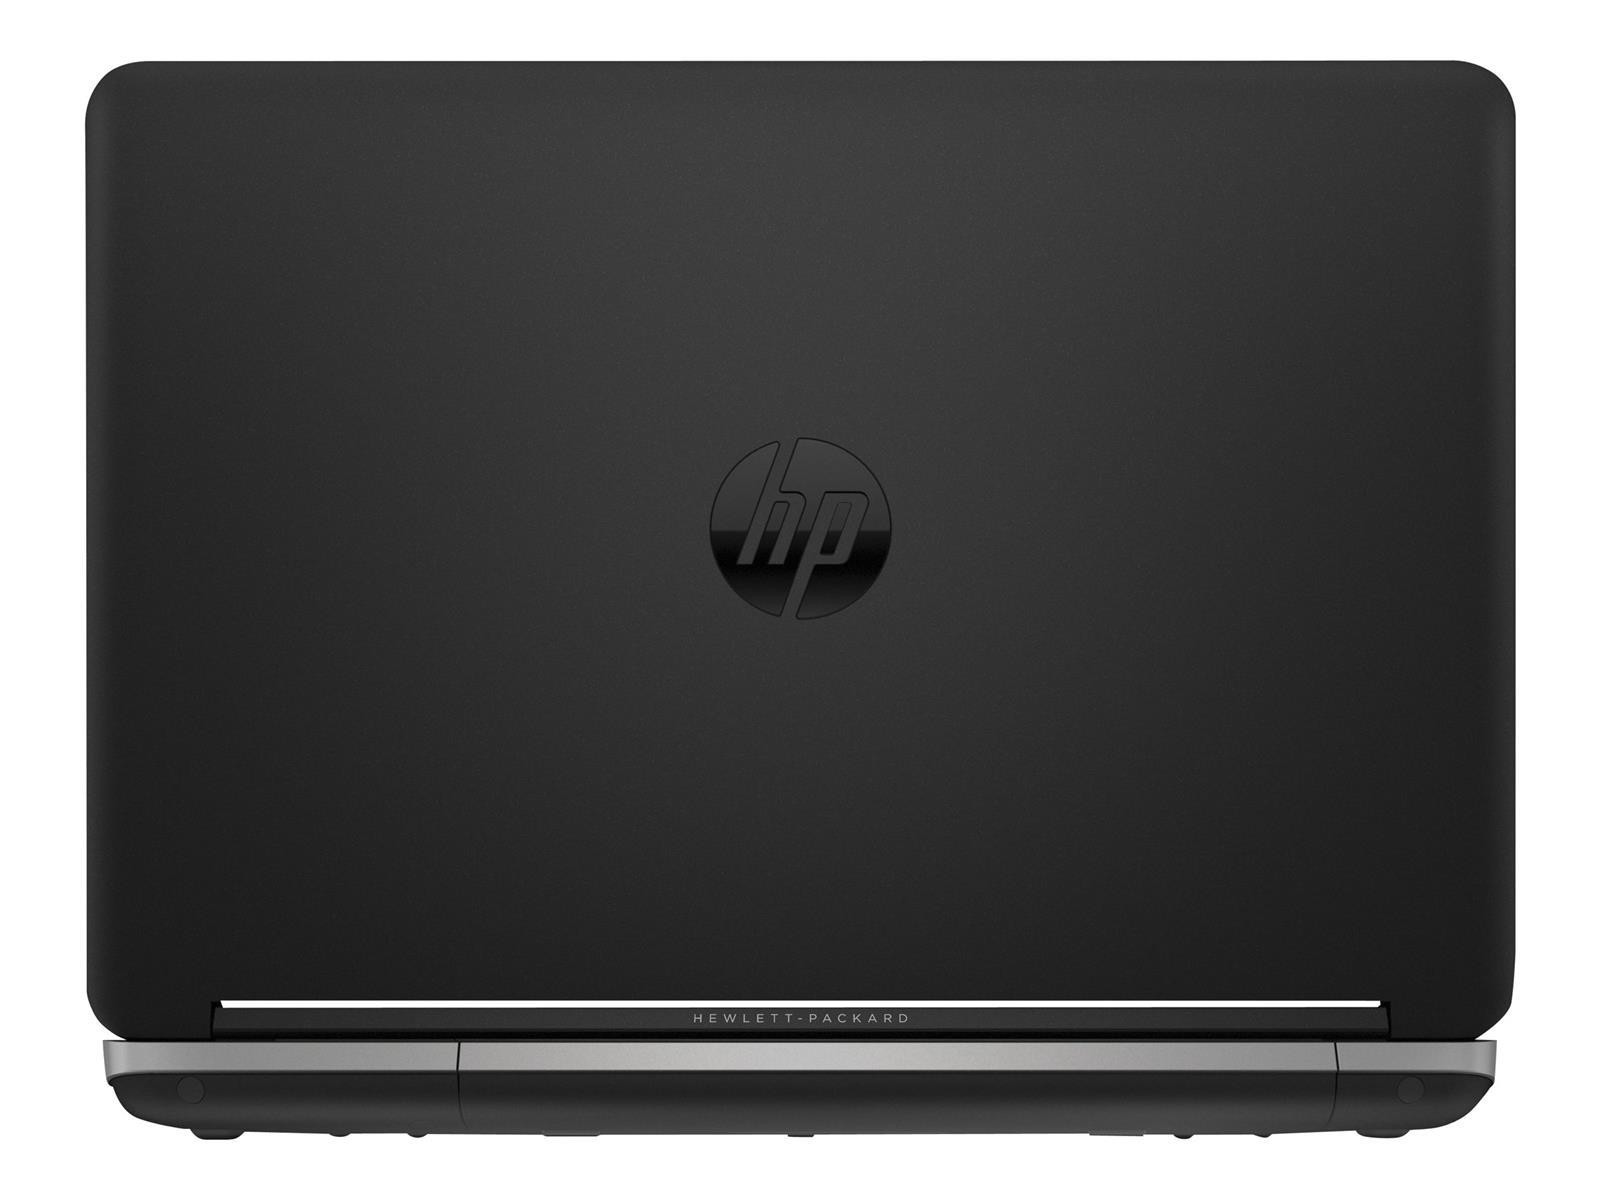 HP ProBook 640 G1 Intel Core i5-4210U 2.60GHz 4GB RAM 350GB HDD Win 10 Pro Akku Defekt